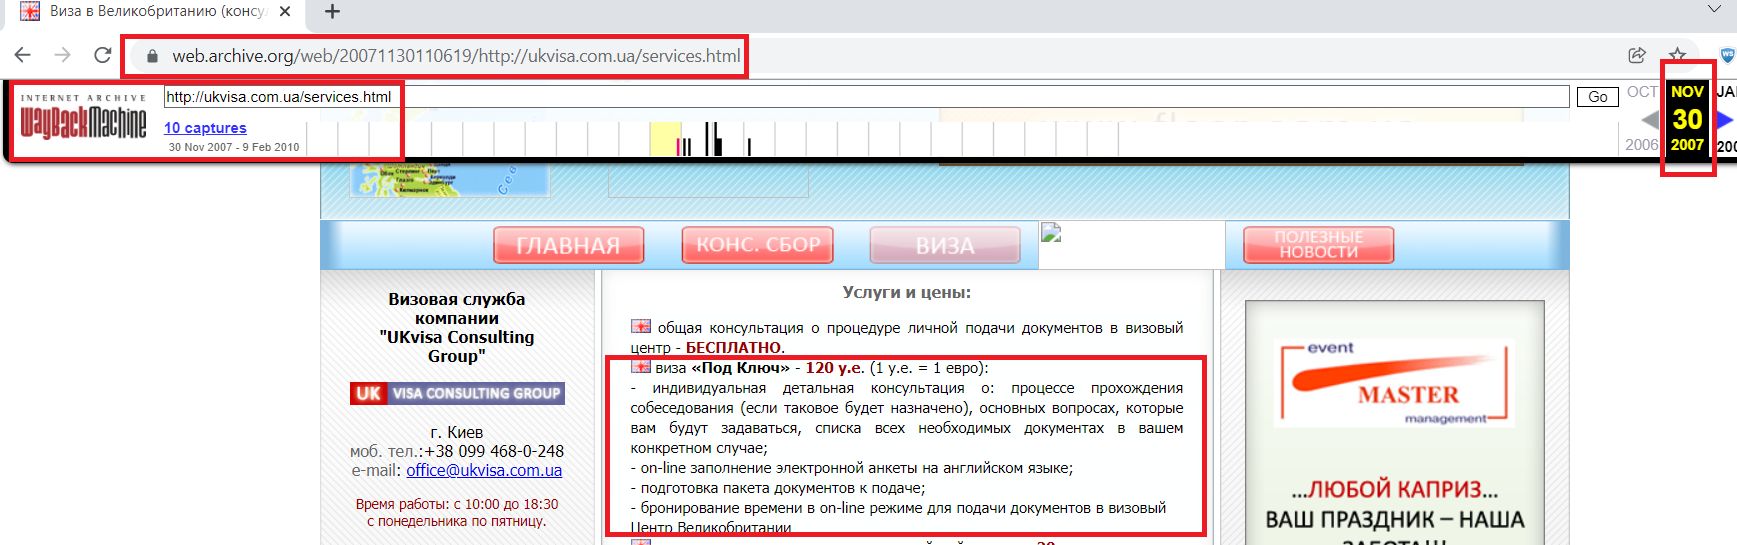 пакет ПОД КЛЮЧ от 30 ноября 2007 года скриншот